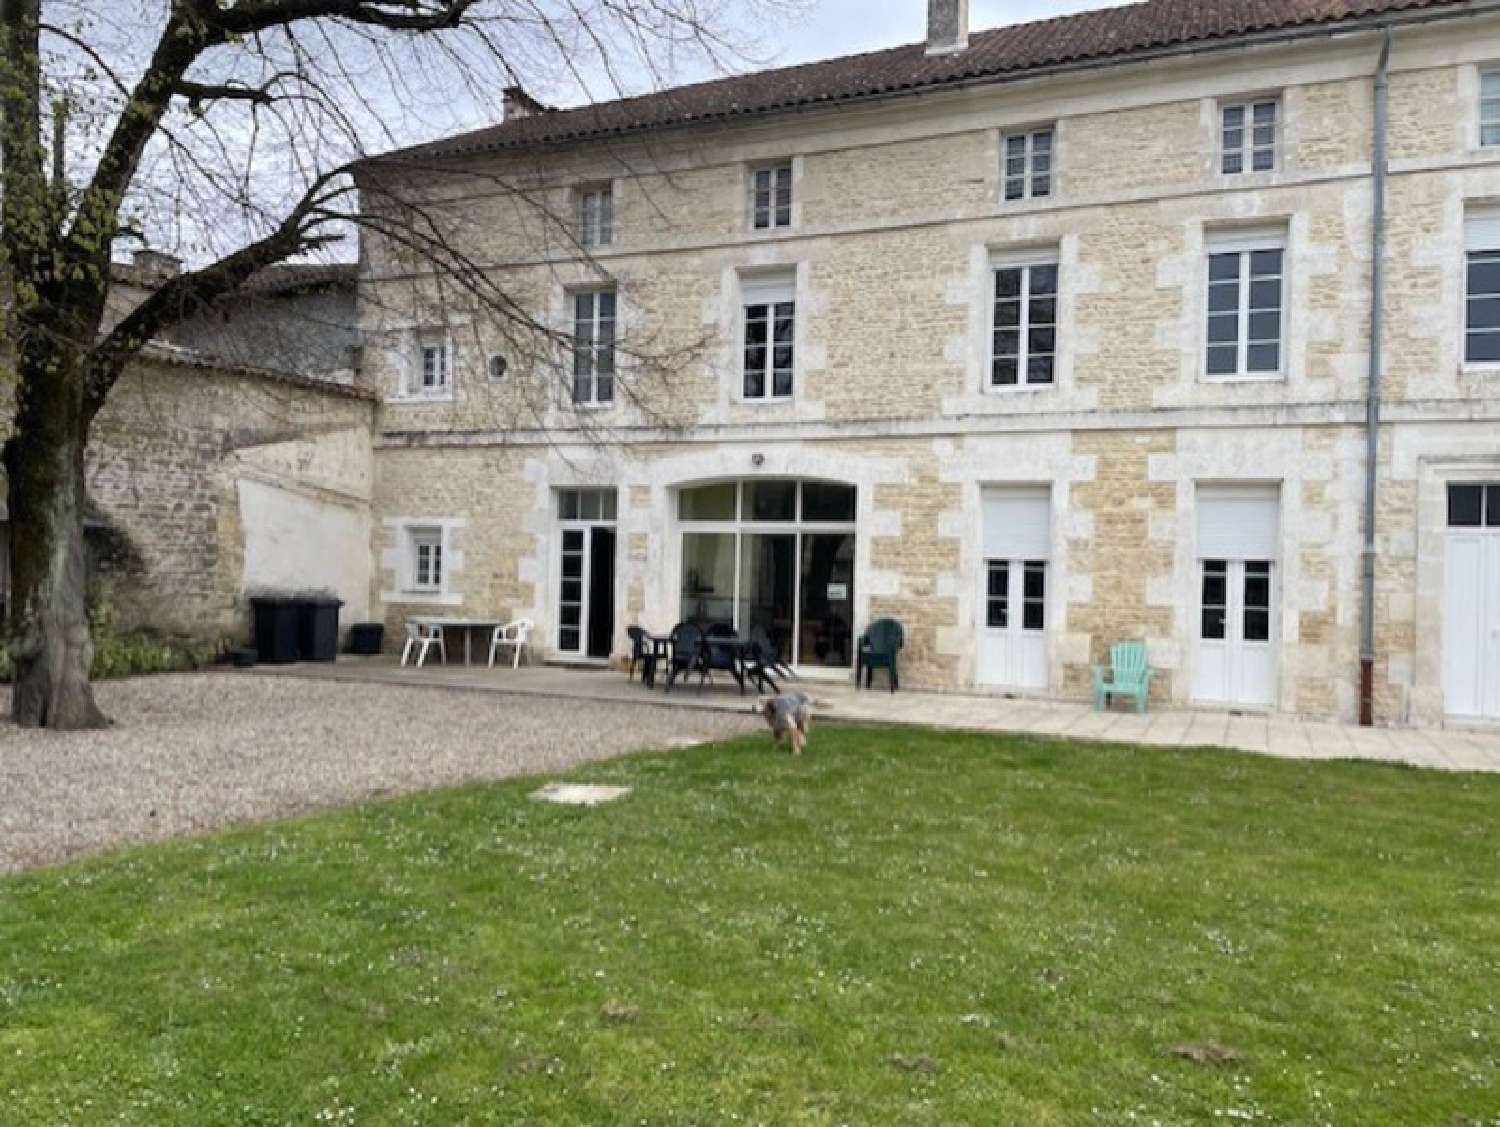  à vendre maison bourgeoise Saint-Cybardeaux Charente 3